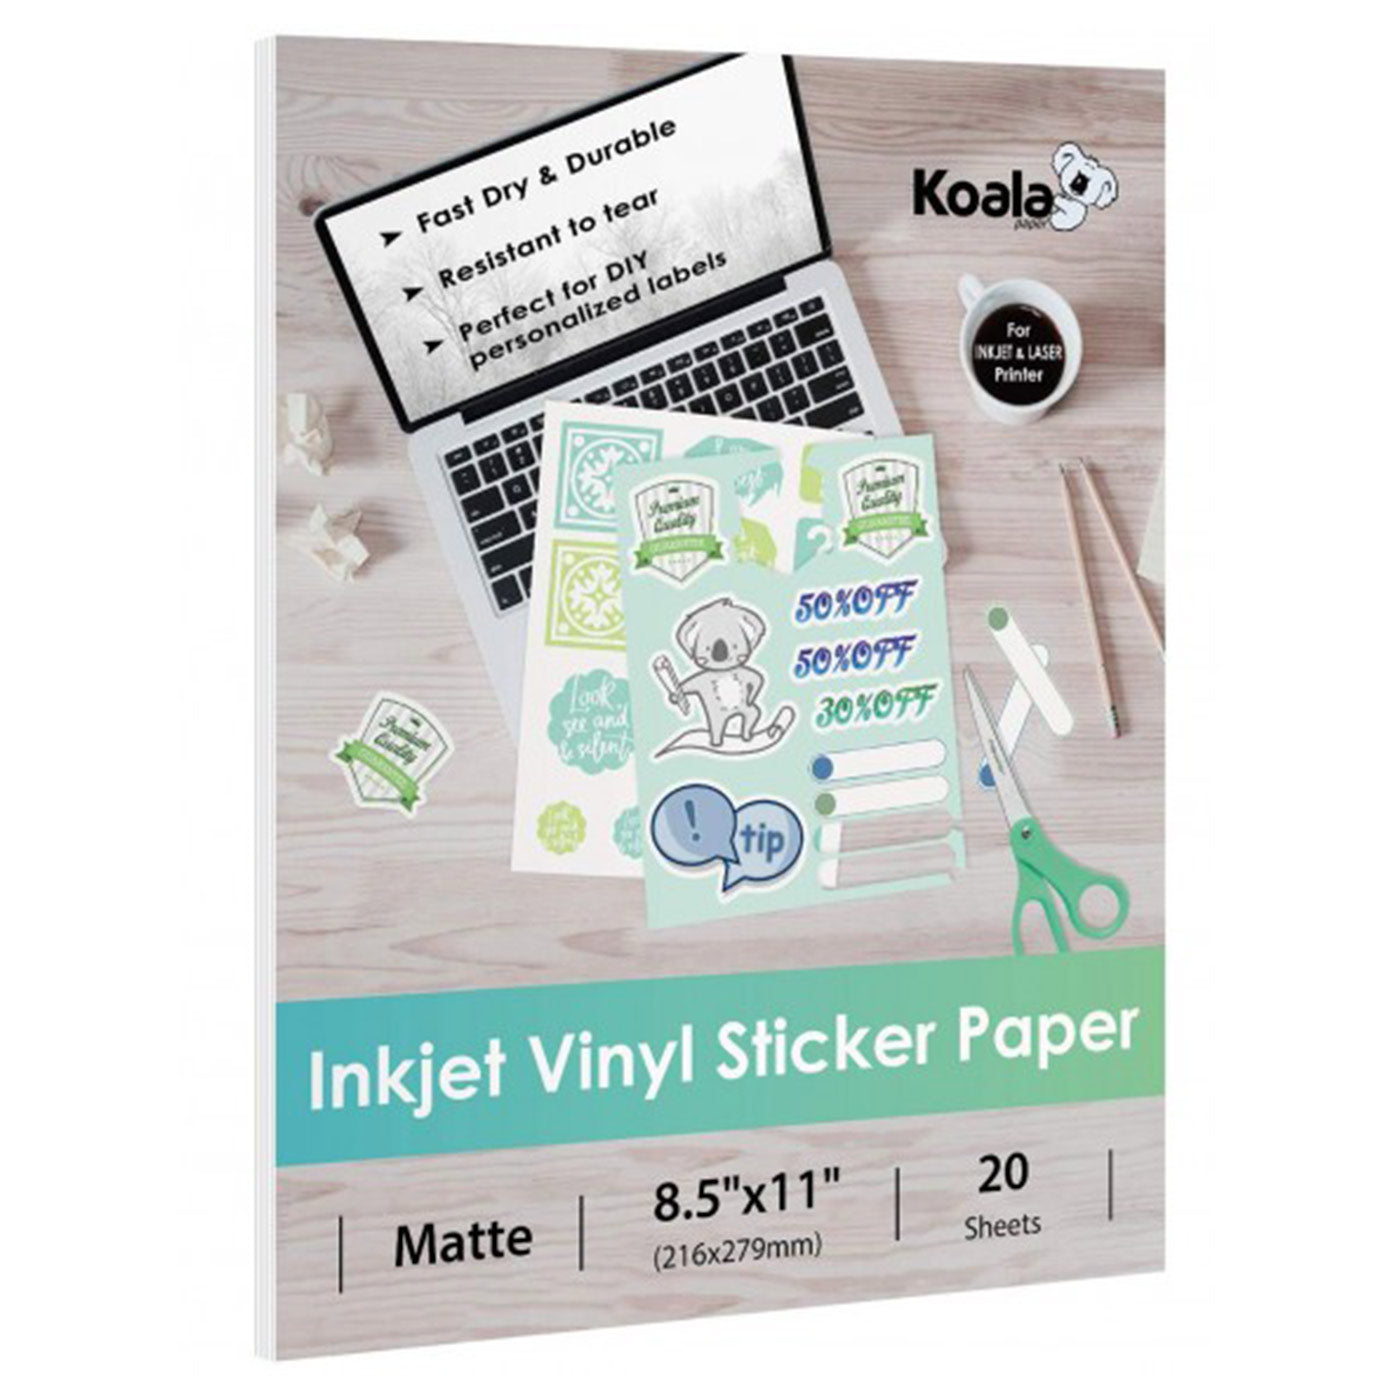 Premium Printable Vinyl Sticker Paper - for Inkjet and Laser Printer - 55  Pack Glossy White Waterproof Inkjet Printable Vinyl - Dries Quickly and